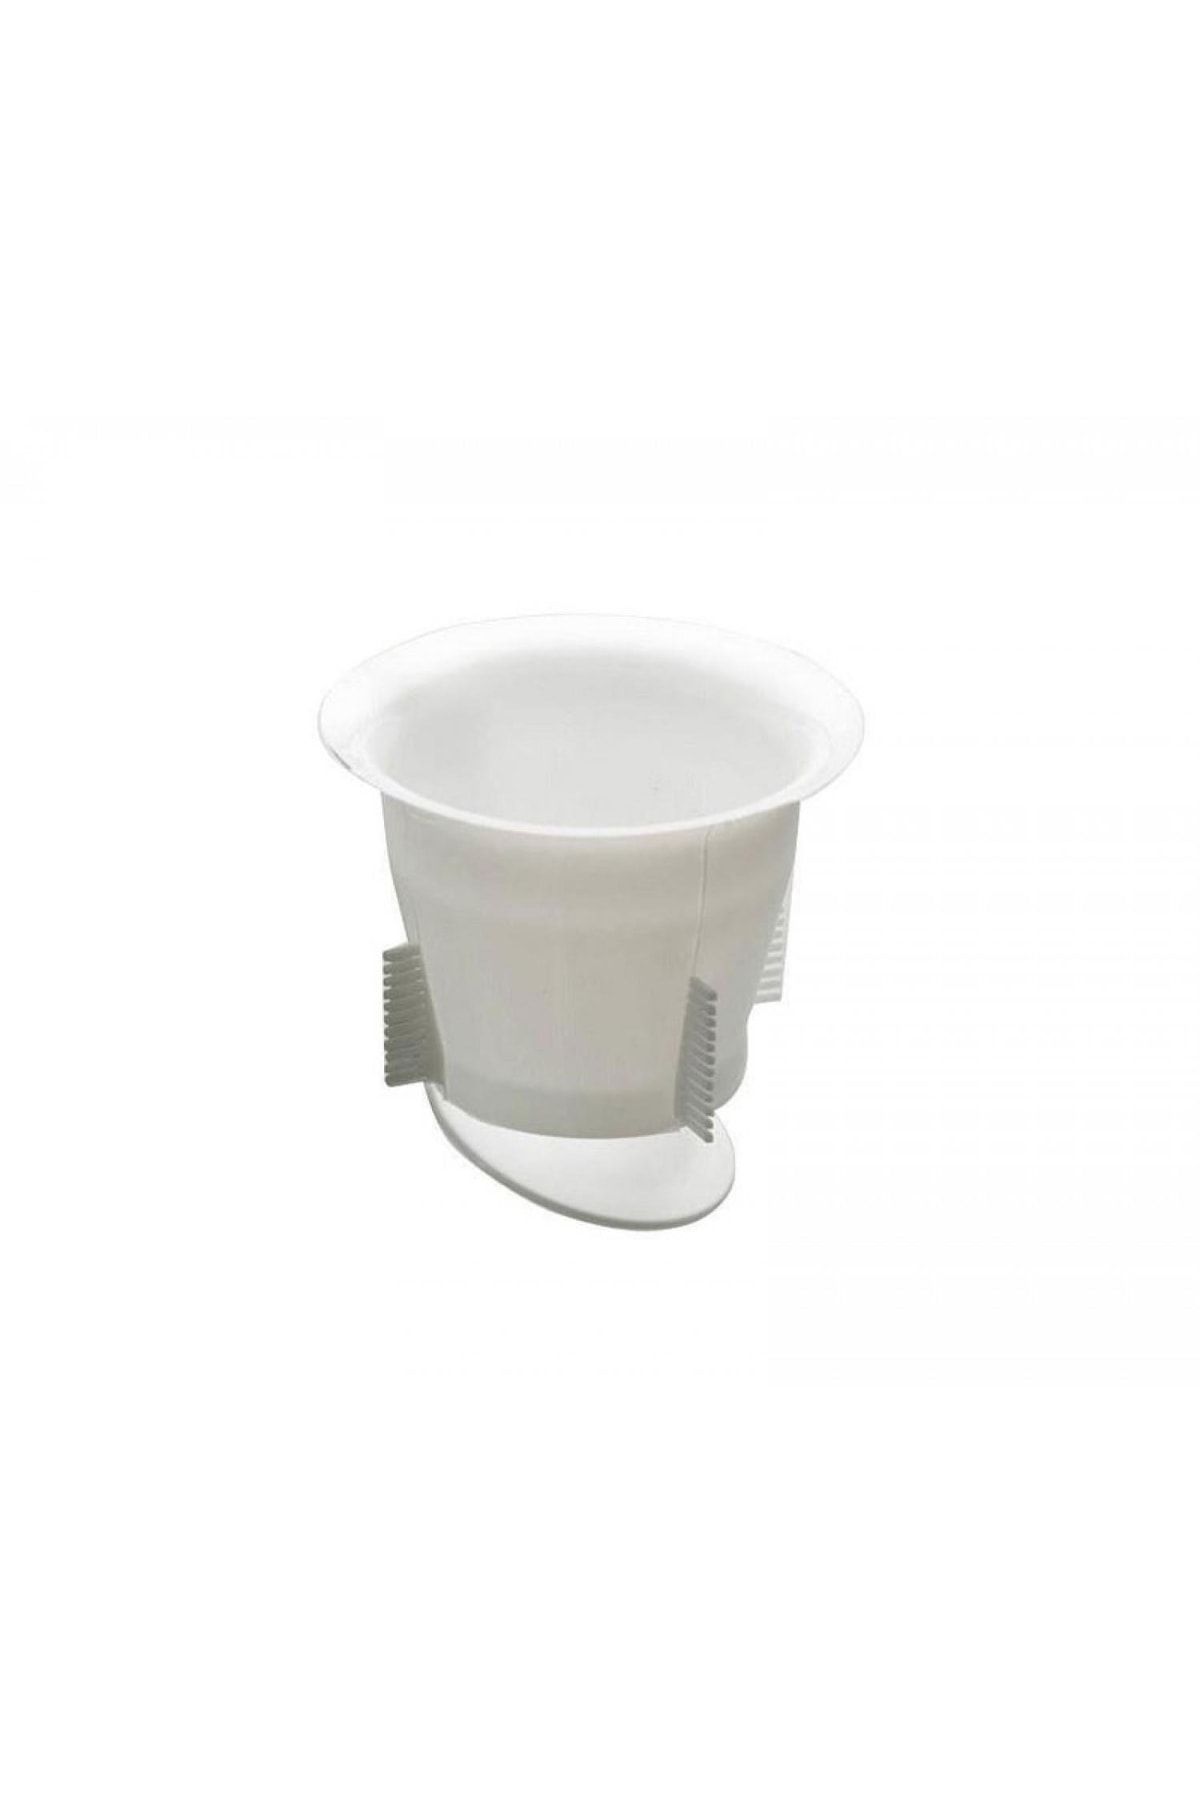 Flora Plastik Wc Matik Tuvalet Koku Giderici Tek Kapaklı - Beyaz - Standart Ölçü